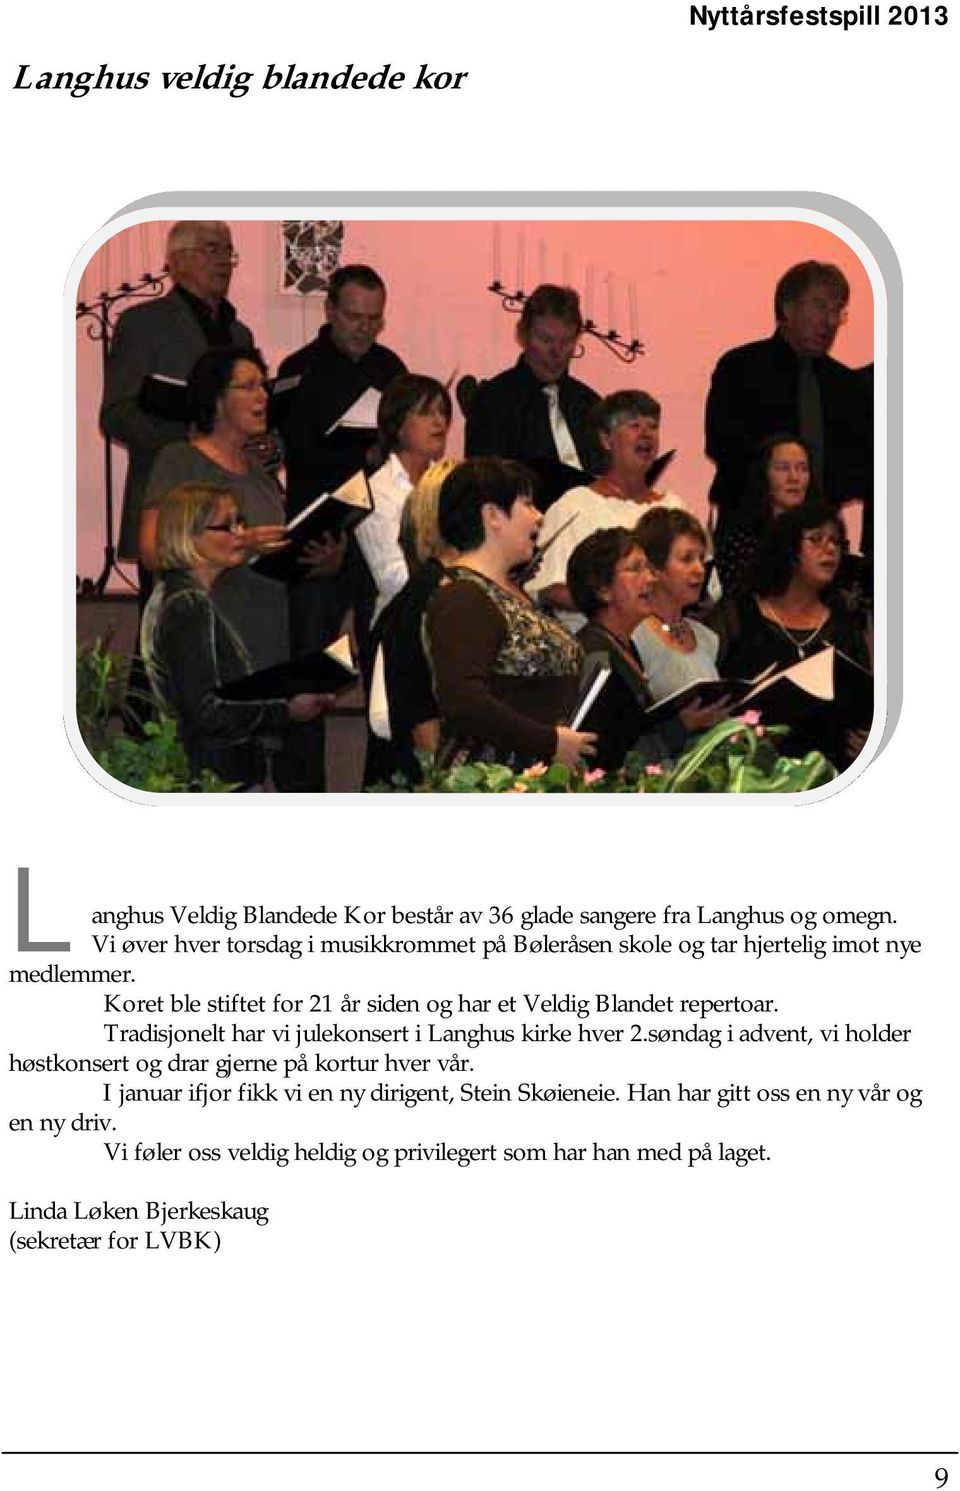 Koret ble stiftet for 21 år siden og har et Veldig Blandet repertoar. Tradisjonelt har vi julekonsert i Langhus kirke hver 2.